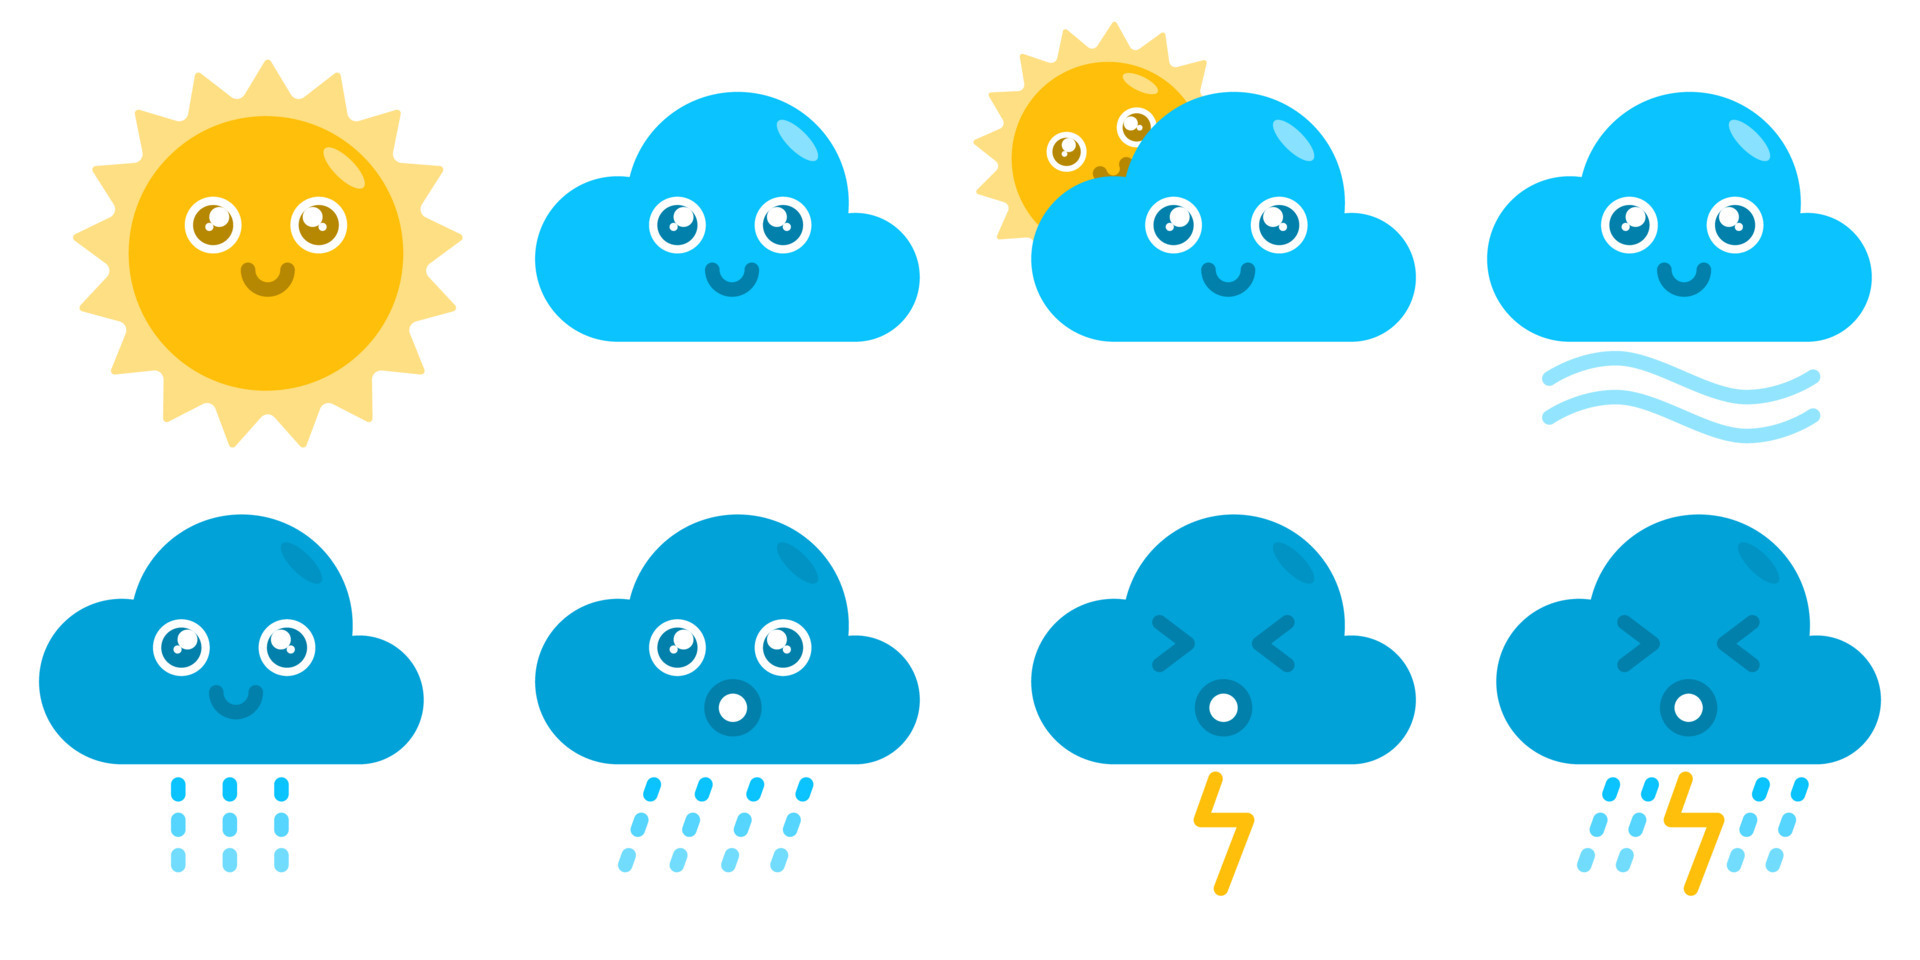 weather forecast logo